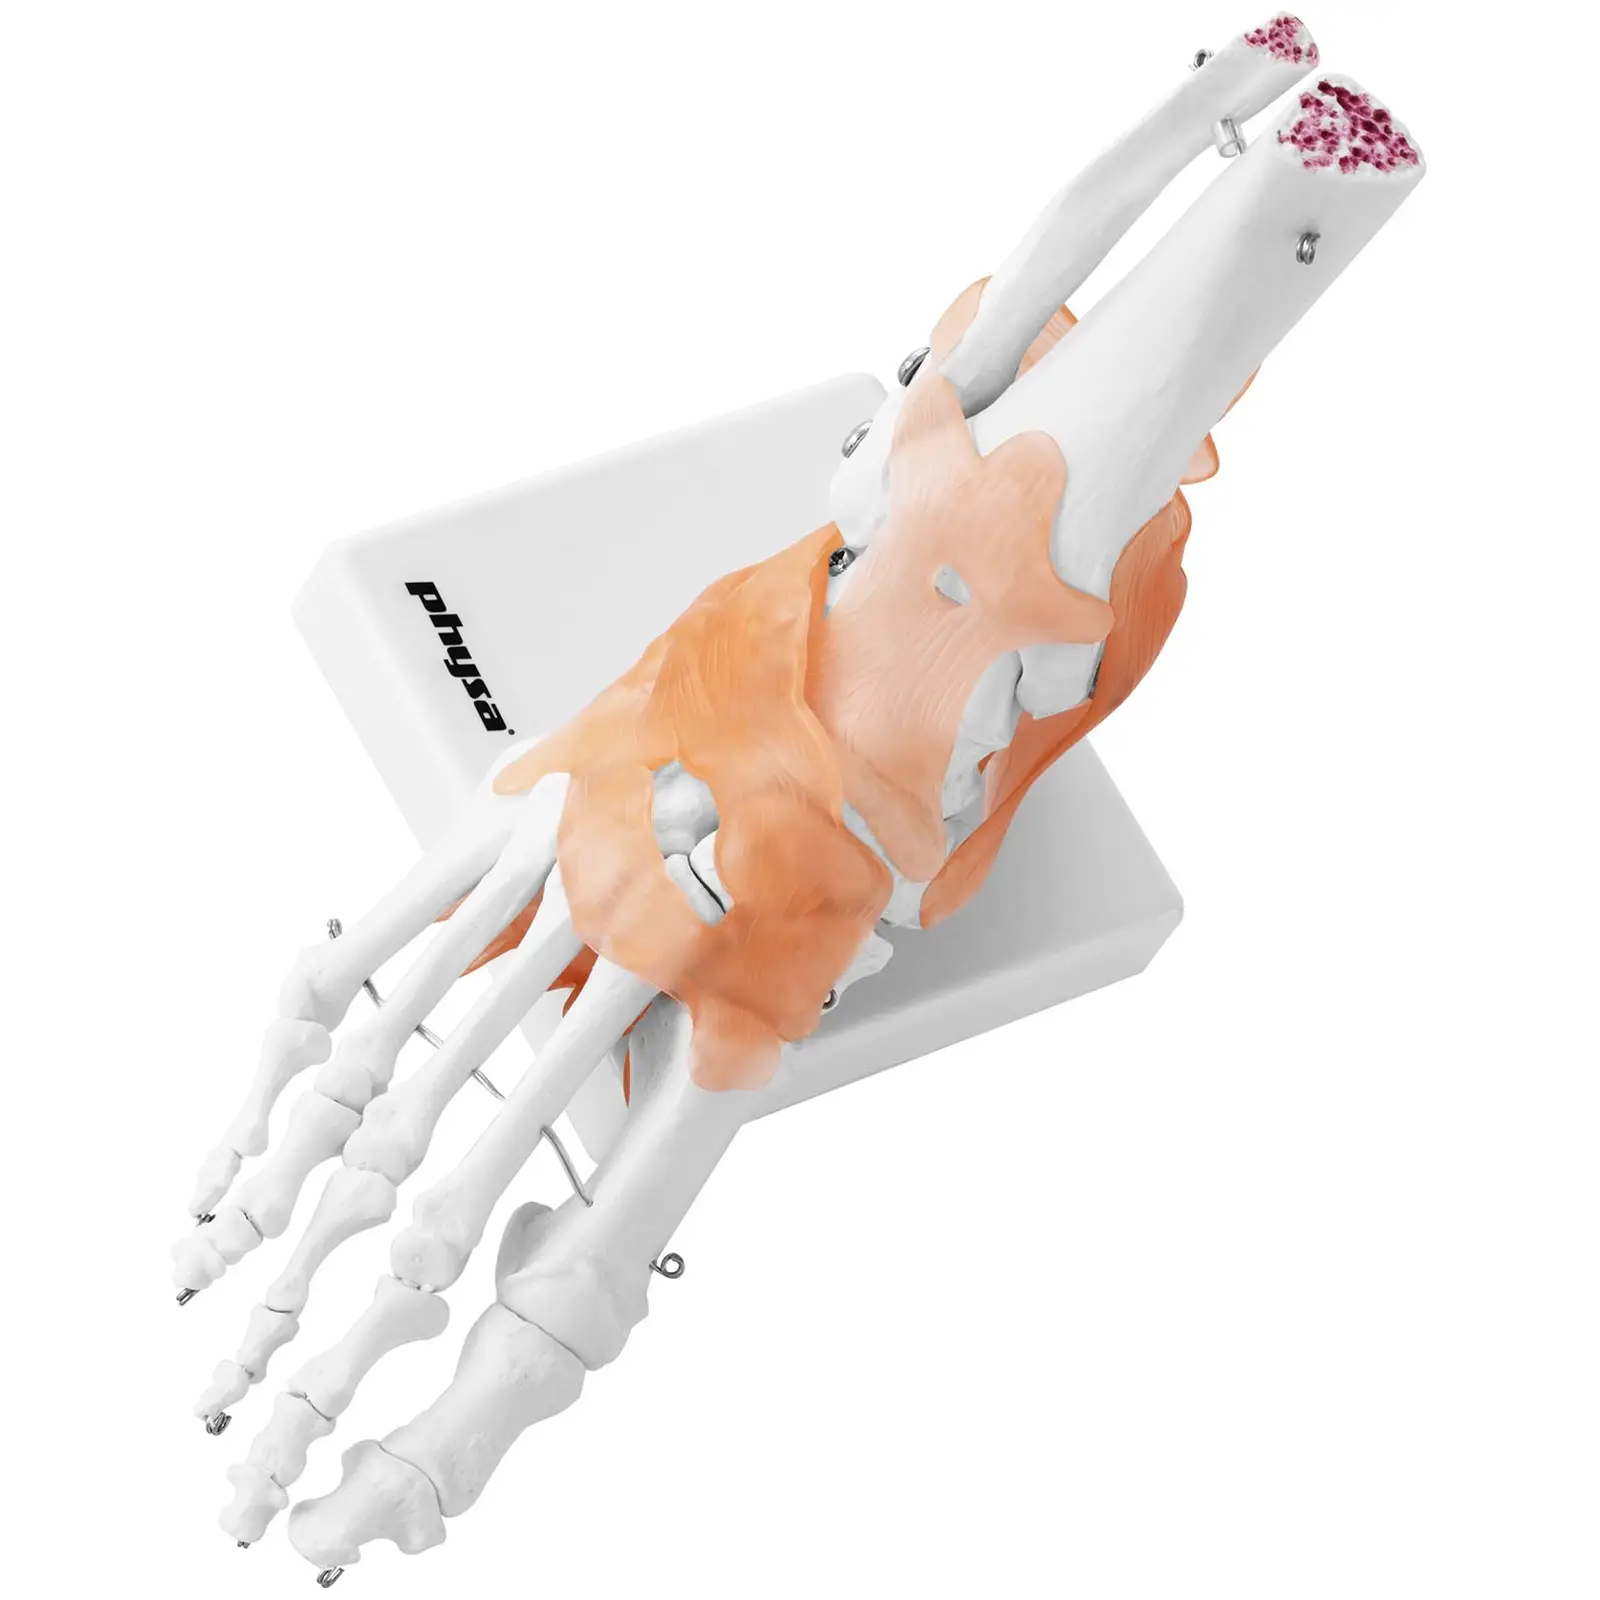 Maquette anatomique pied humain - avec ligaments et articulations